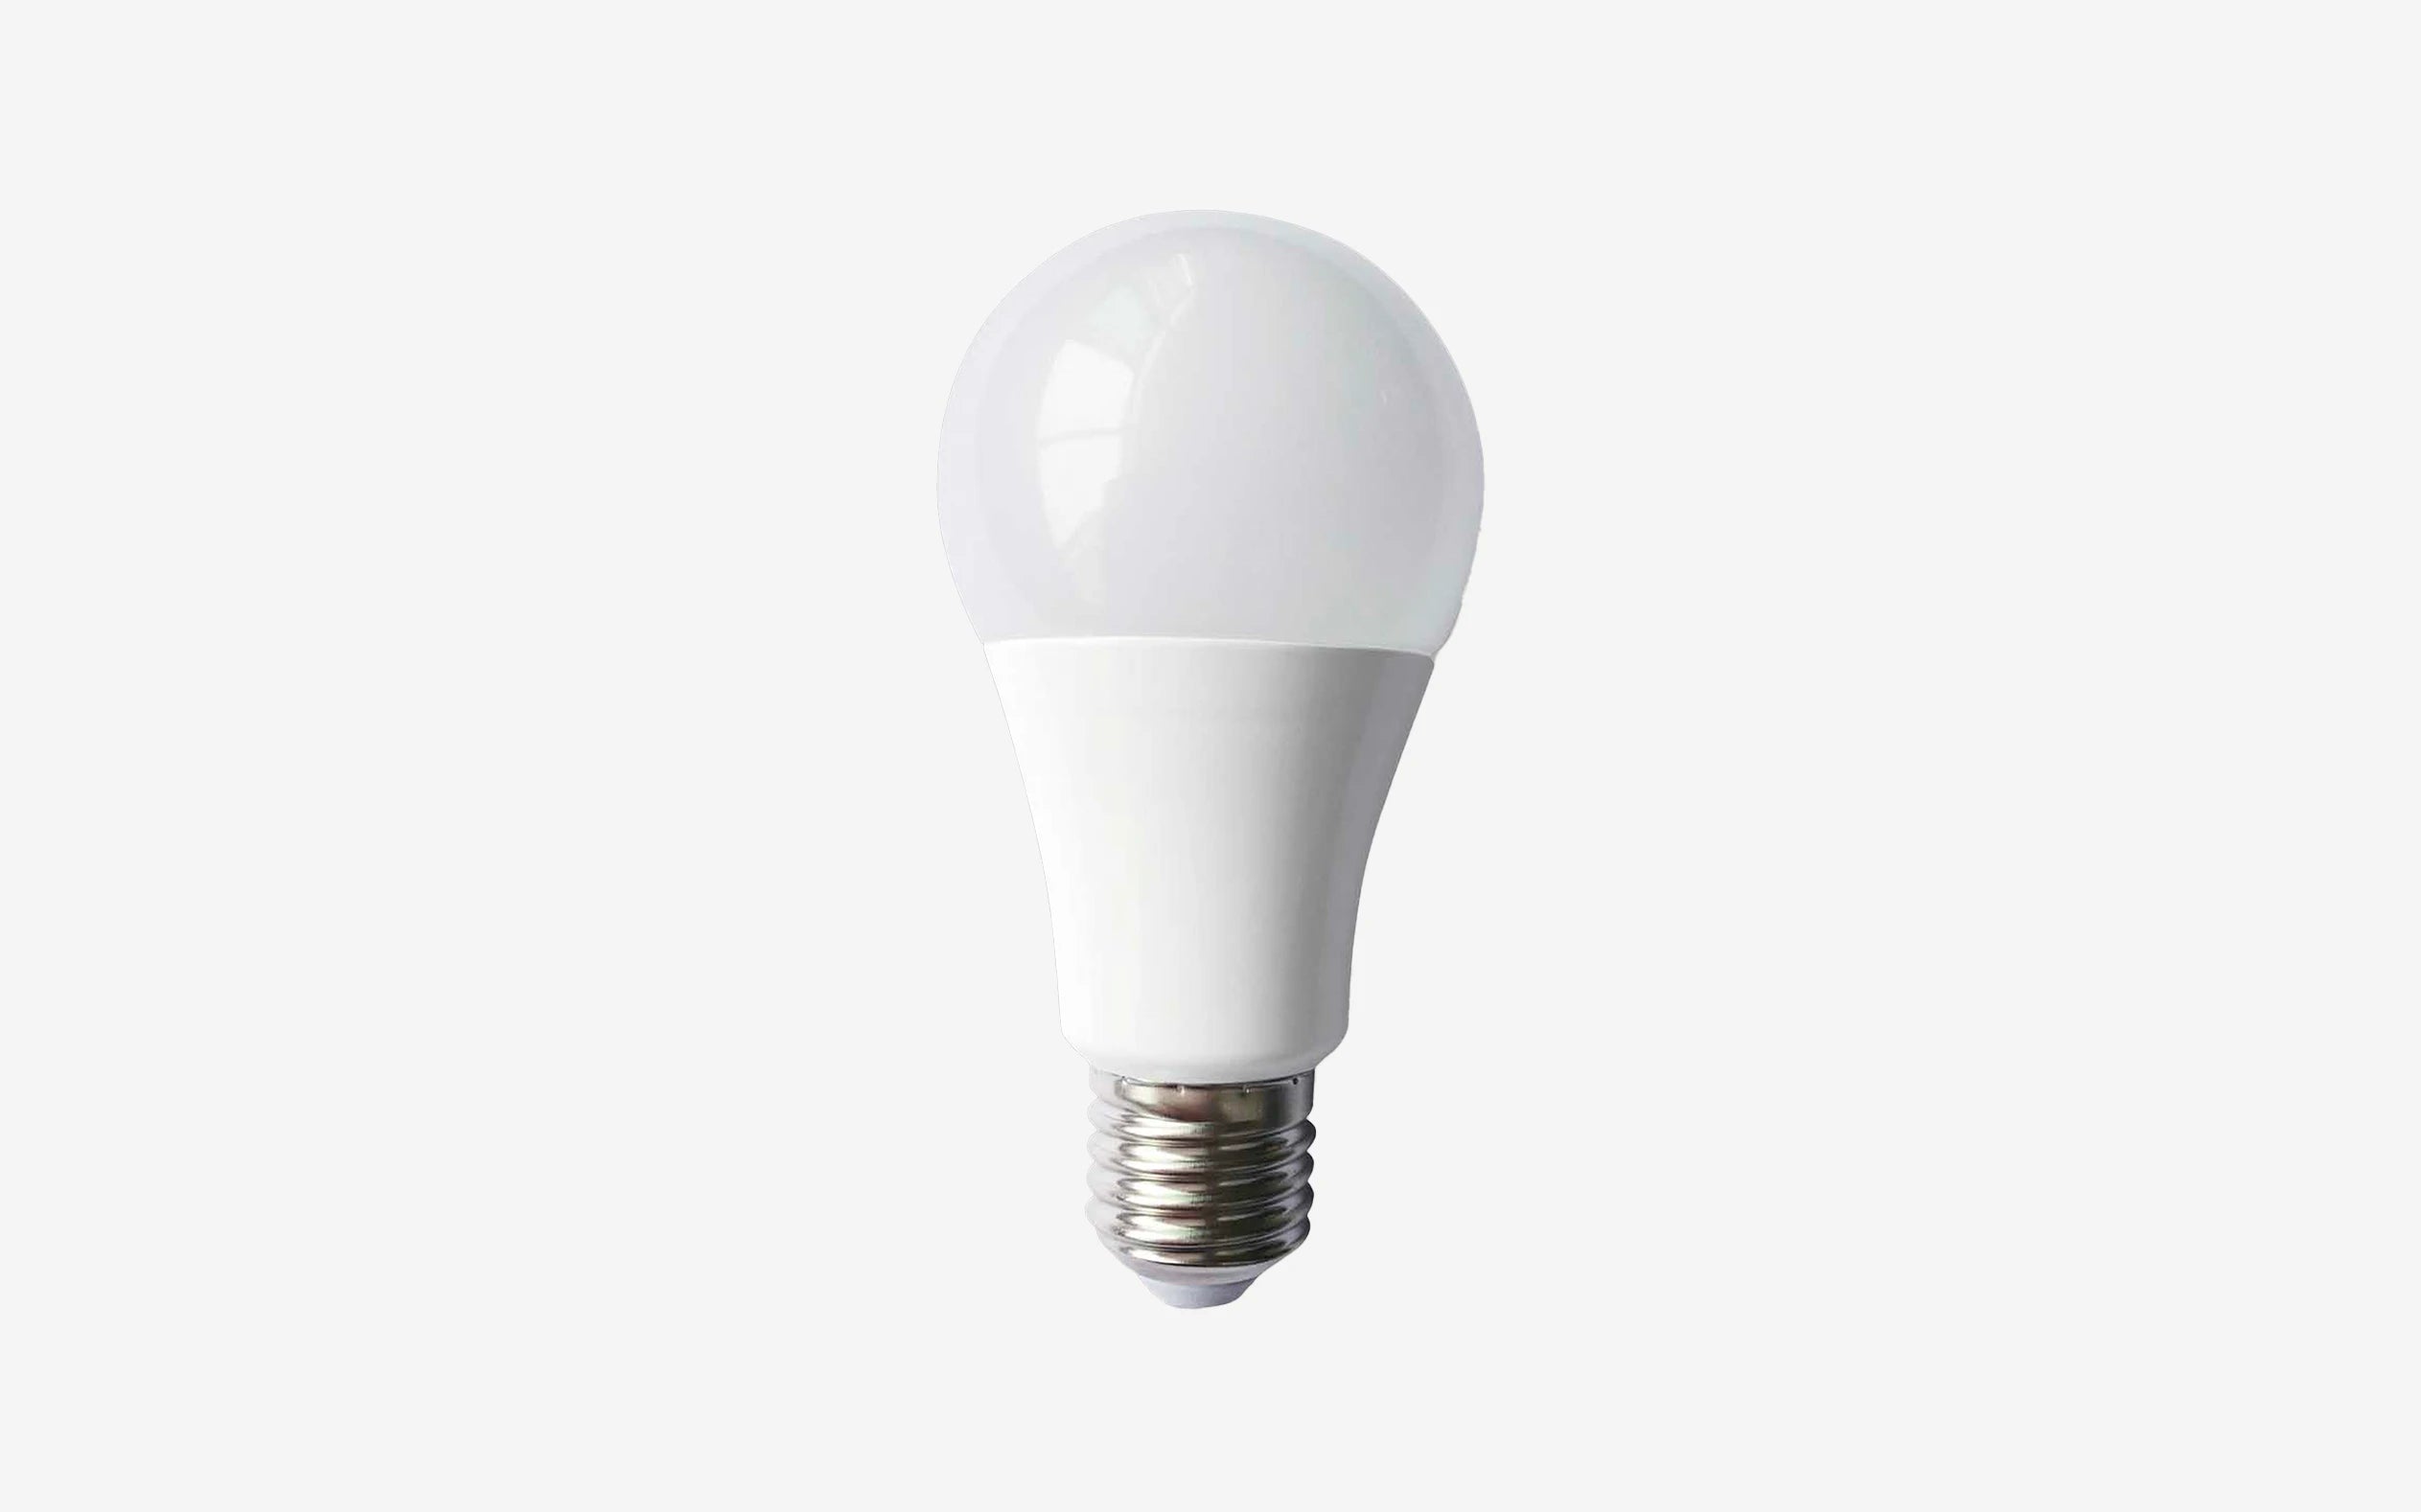 11W LED Bulb